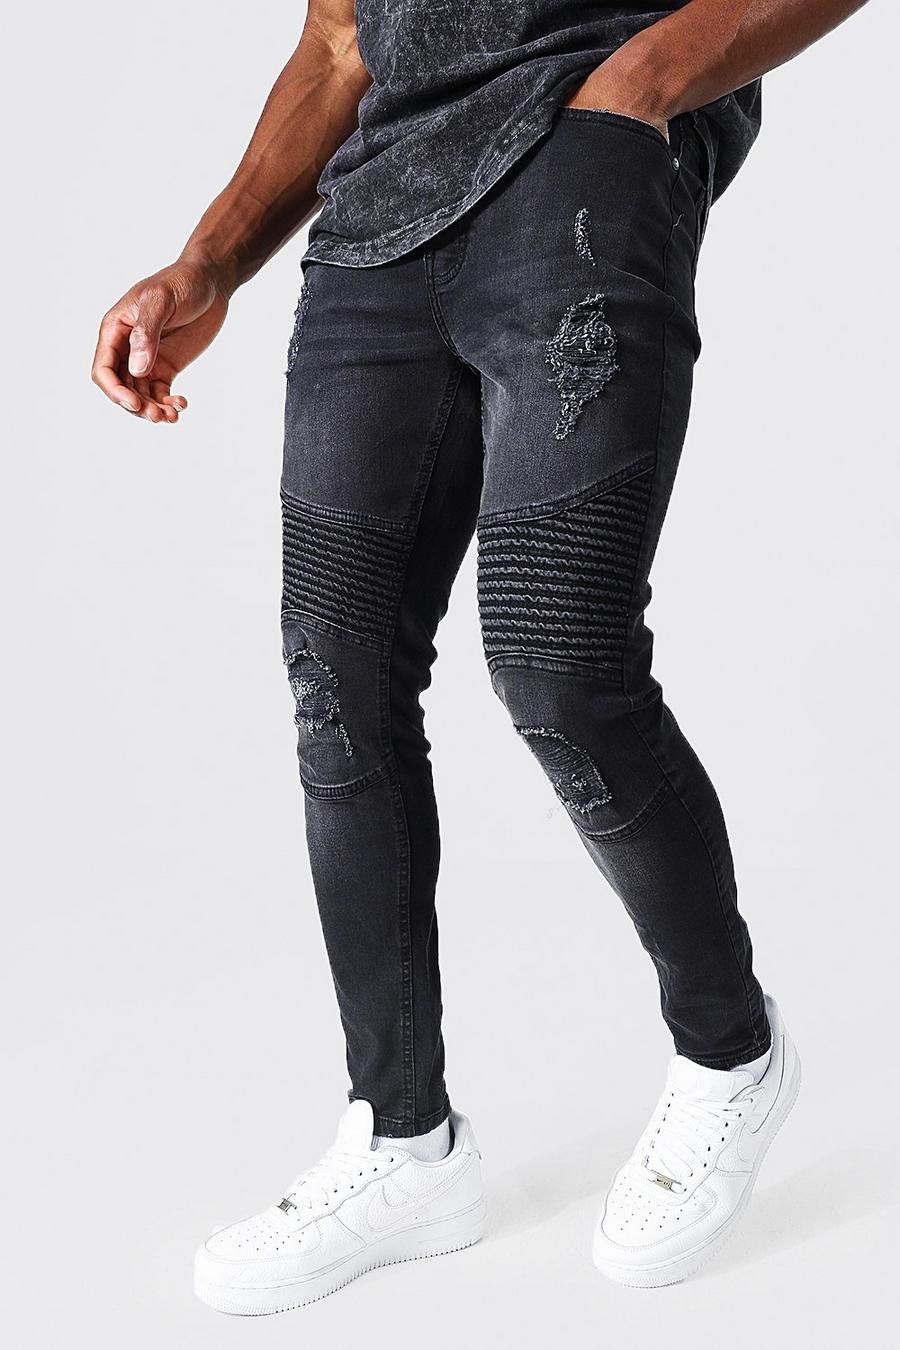 שחור דהוי סופר סקיני ג'ינס עם קרעים בסגנון אופנוענים image number 1